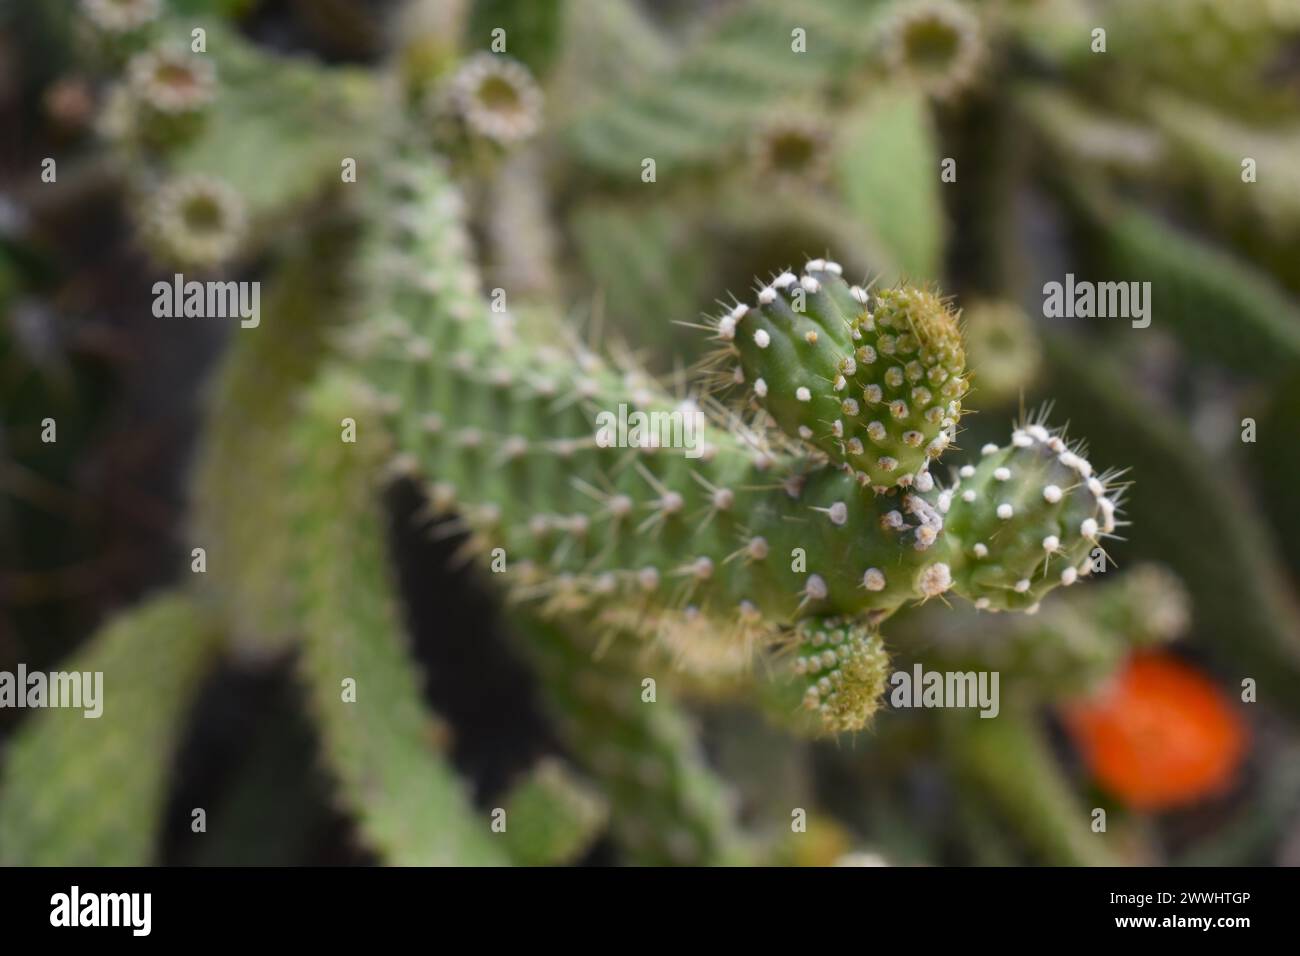 Planta Cactus verde con detalle de espinas. Acercamiento macro Stock Photo